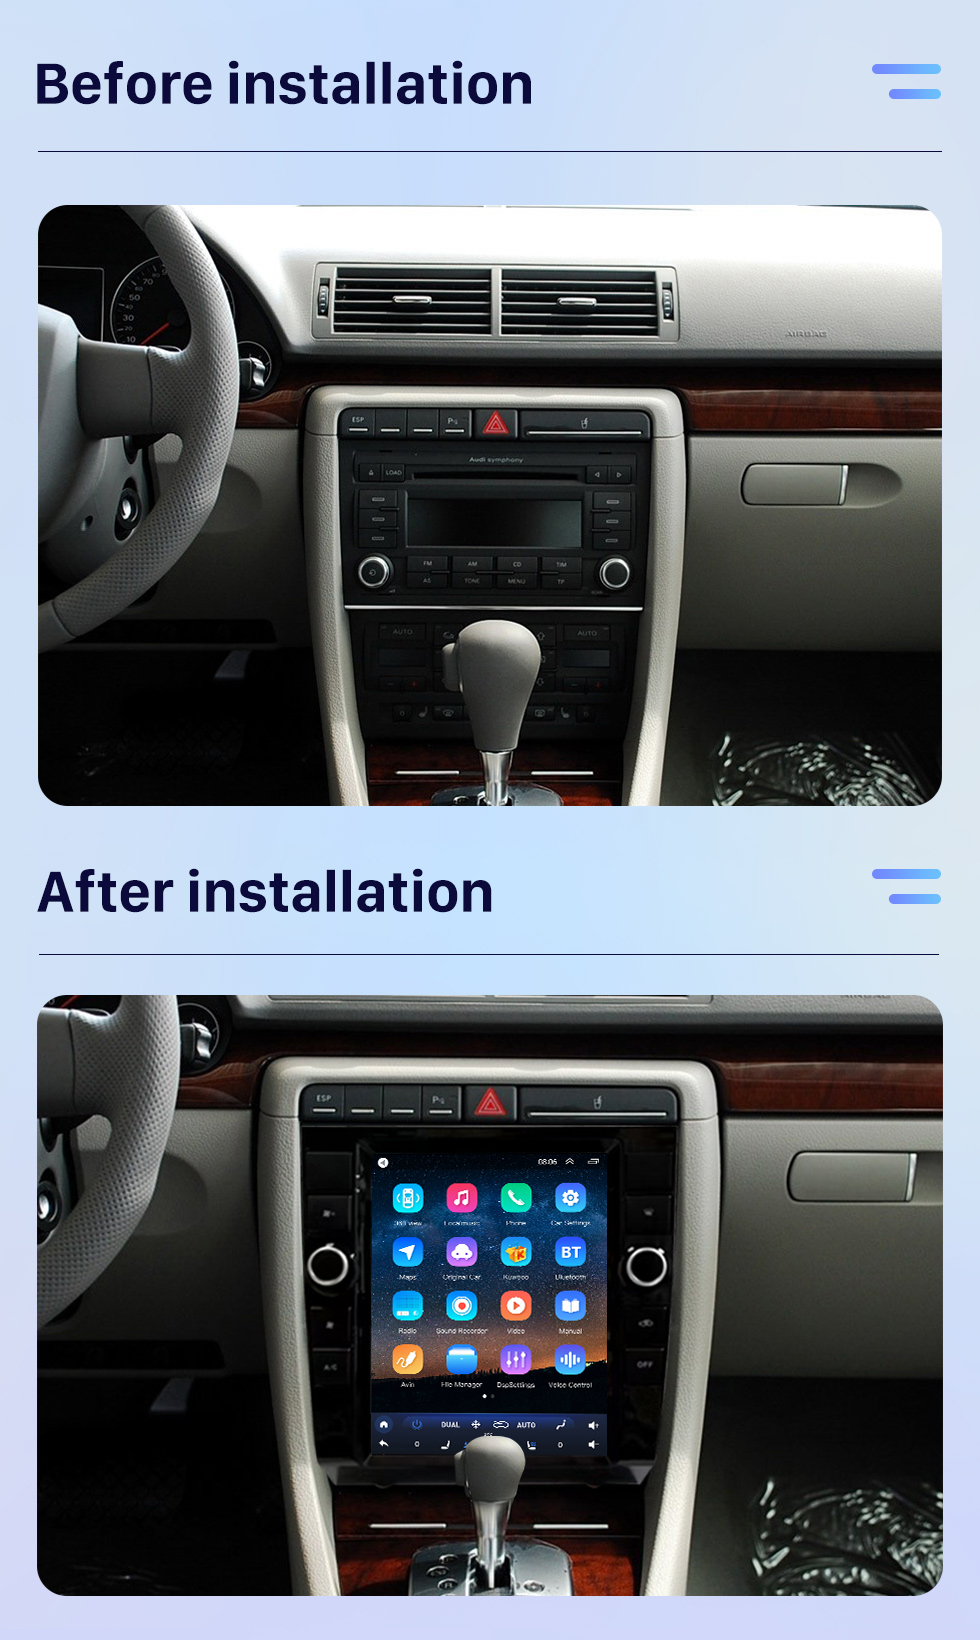 Seicane Para 2002-2008 Audi A4 atualizado Android 10 rádio estéreo com tela sensível ao toque de 9,7 polegadas built-in Carplay DSP suporte Navegação 3D Controle de volante 360 ° Câmera